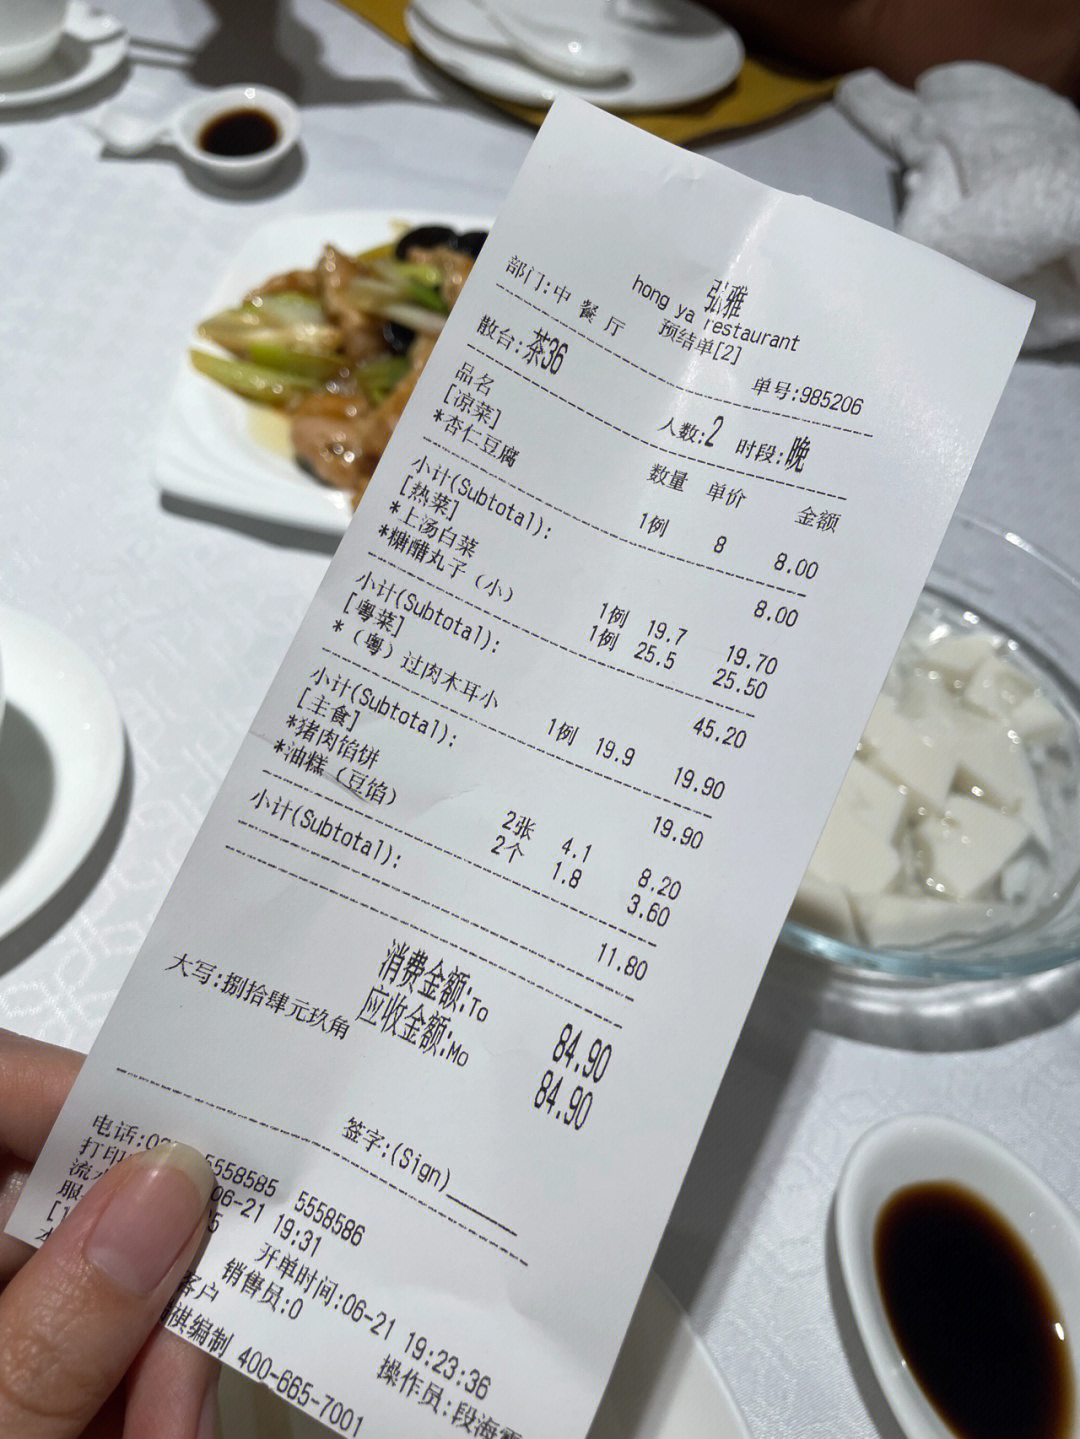 大同市弘雅饭店菜单图片